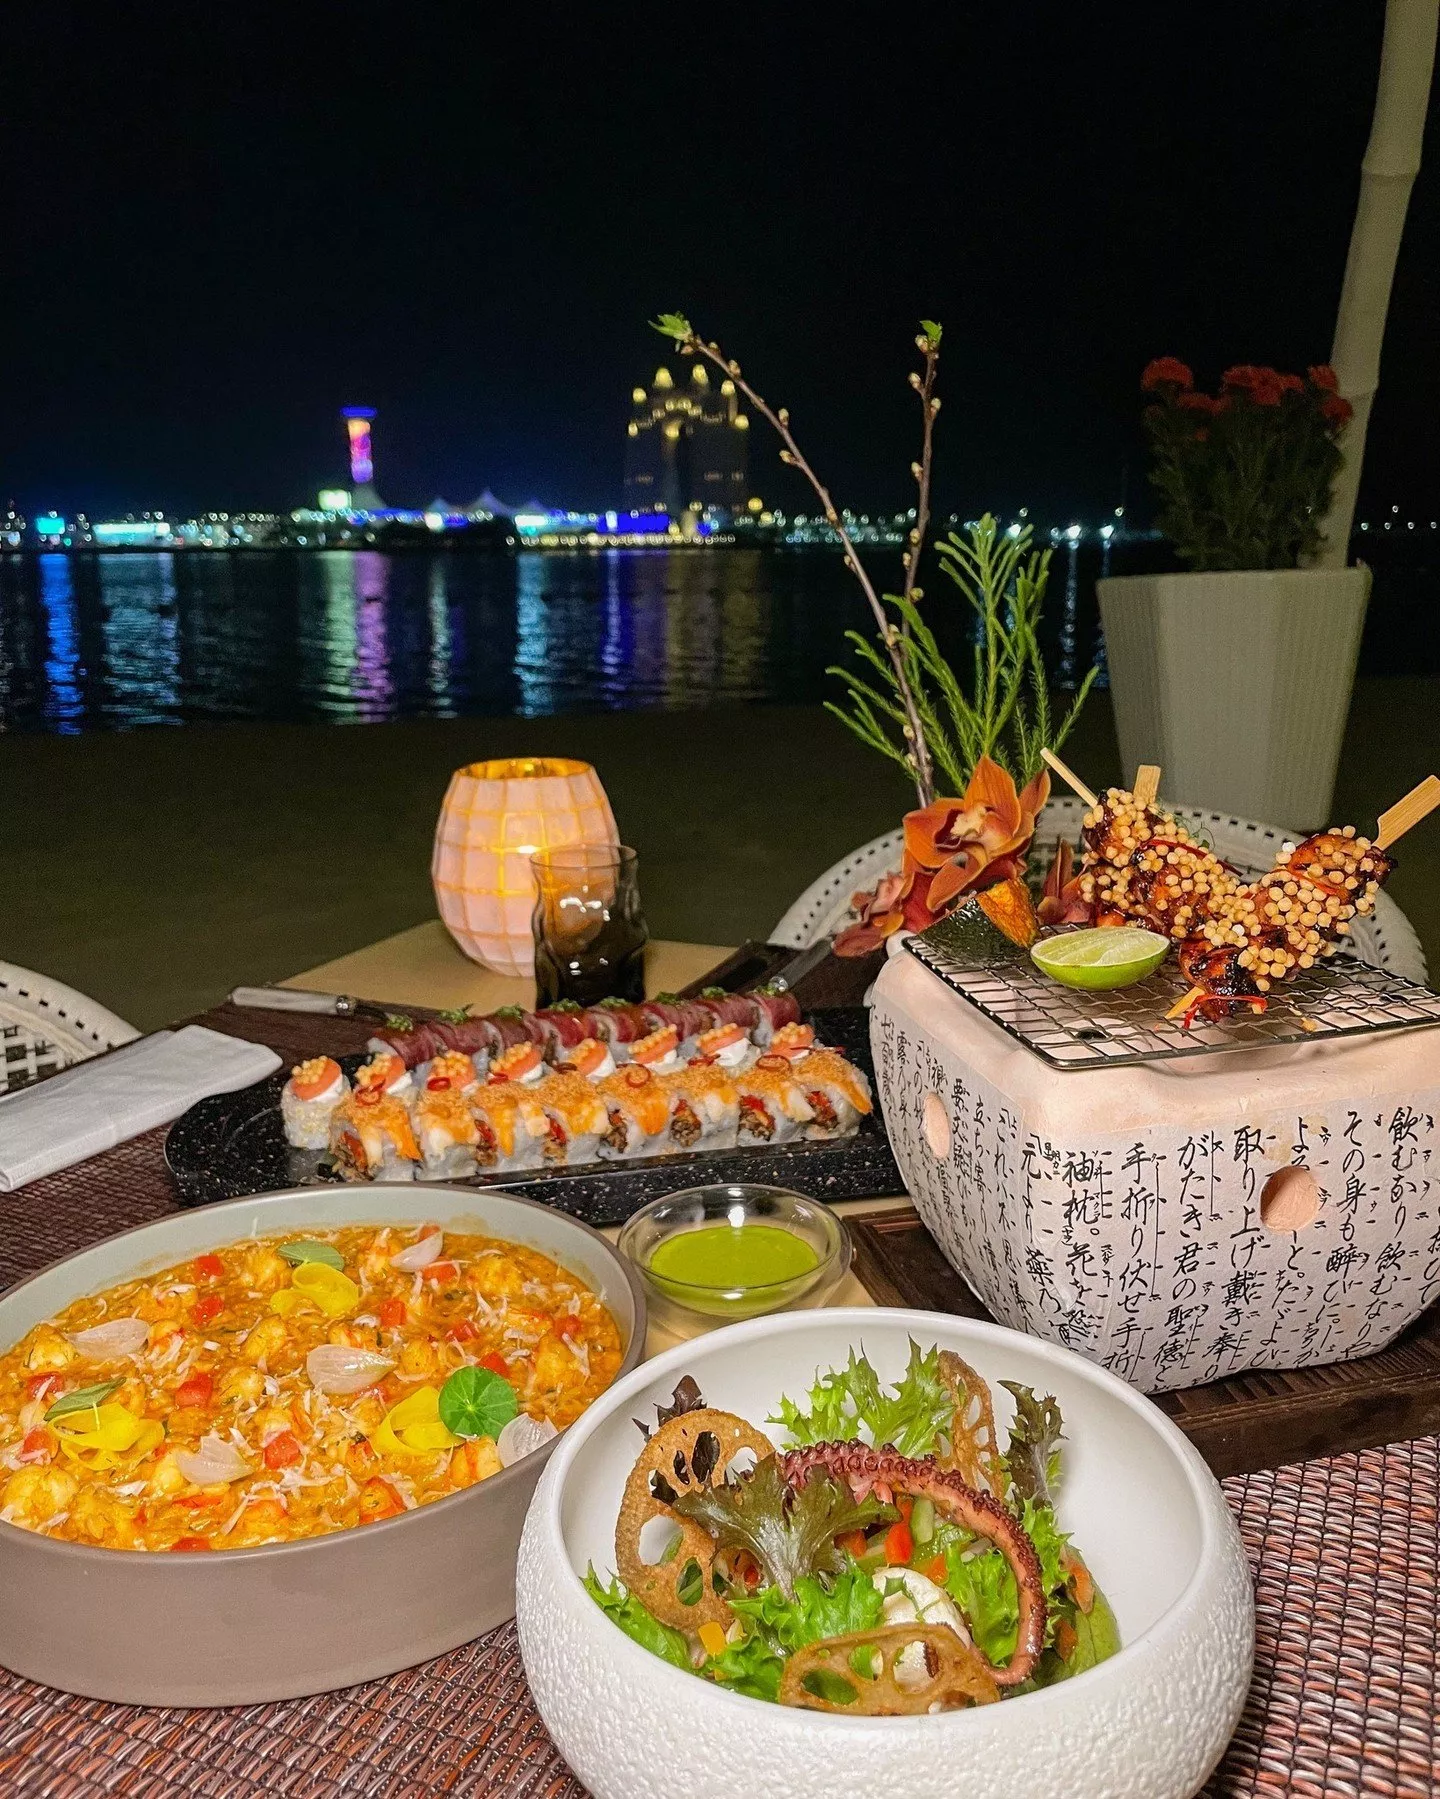 أفضل 12 مطعم مطل على البحر في أبو ظبي تضفي أجواء رائعة على جلستكِ